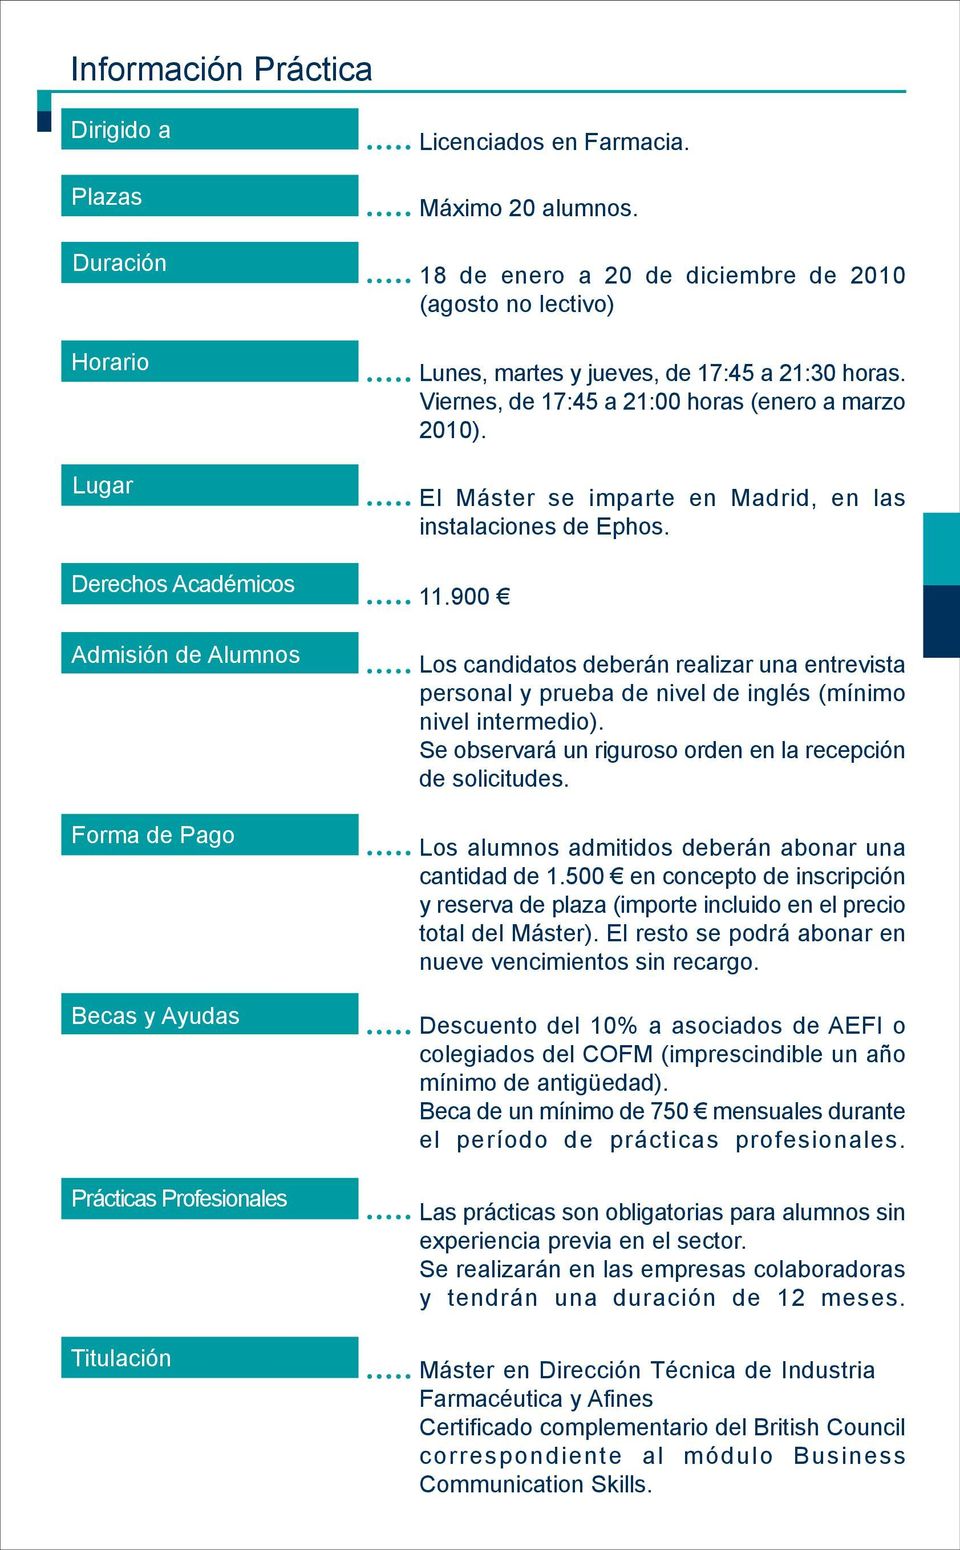 El Máster se imparte en Madrid, en las instalaciones de Ephos. 11.900 Los candidatos deberán realizar una entrevista personal y prueba de nivel de inglés (mínimo nivel intermedio).